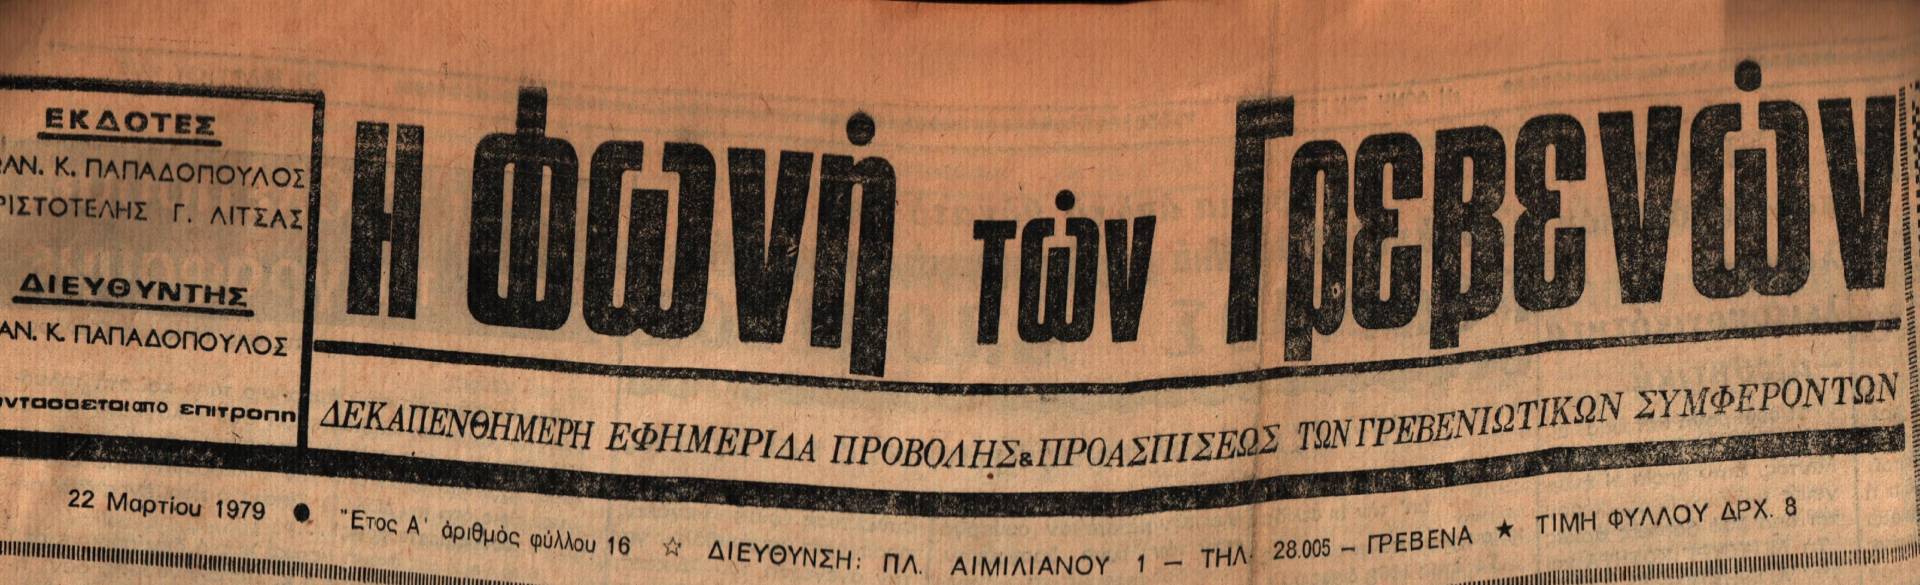 22 Μαρτίου 1979: Η ιστορία των Γρεβενών μέσα από τον Τοπικό Τύπο.Σήμερα:”Είμαστε στο πλευρό της Συντονιστικής Επιτροπής του Πανγρεβενιώτικου αγώνα”